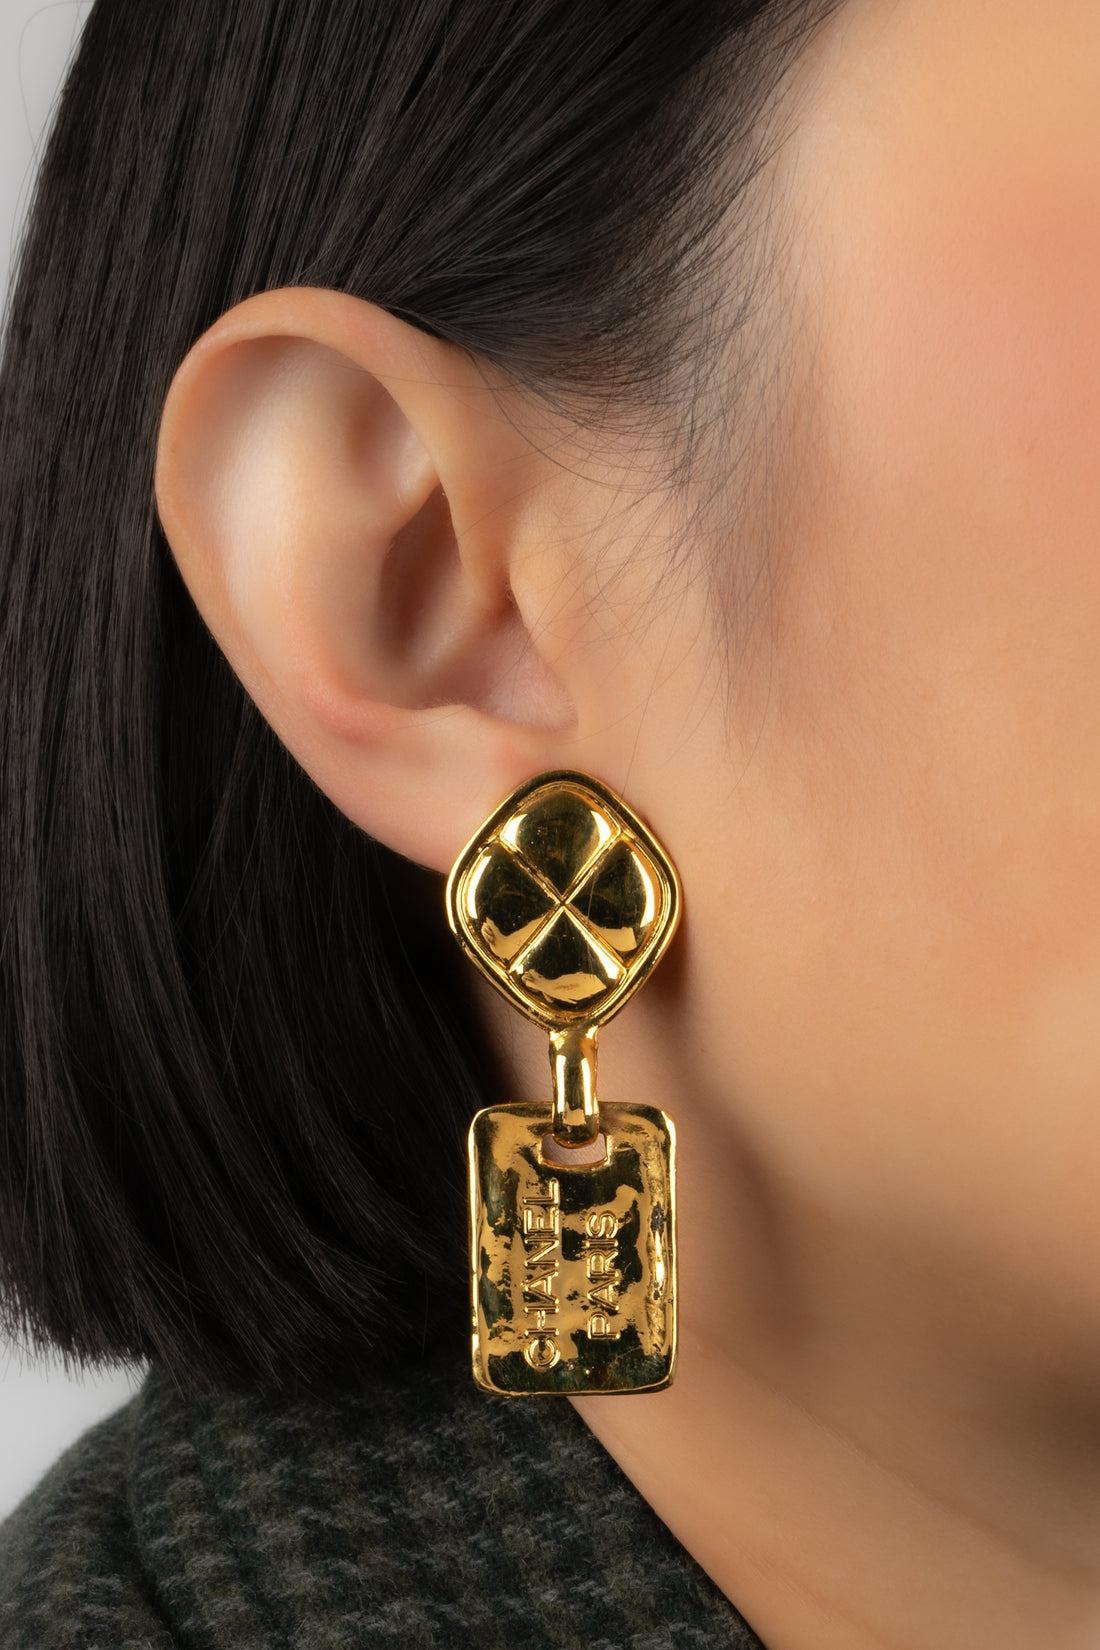 Chanel - (Made in France) Gravierte, gesteppte Ohrringe aus goldenem Metall zum Anstecken vom Ende der 1980er Jahre.

Zusätzliche Informationen:
Zustand: Sehr guter Zustand
Abmessungen: Höhe: 6 cm
Zeitraum: 20. Jahrhundert

Sellers Referenz: BOB191